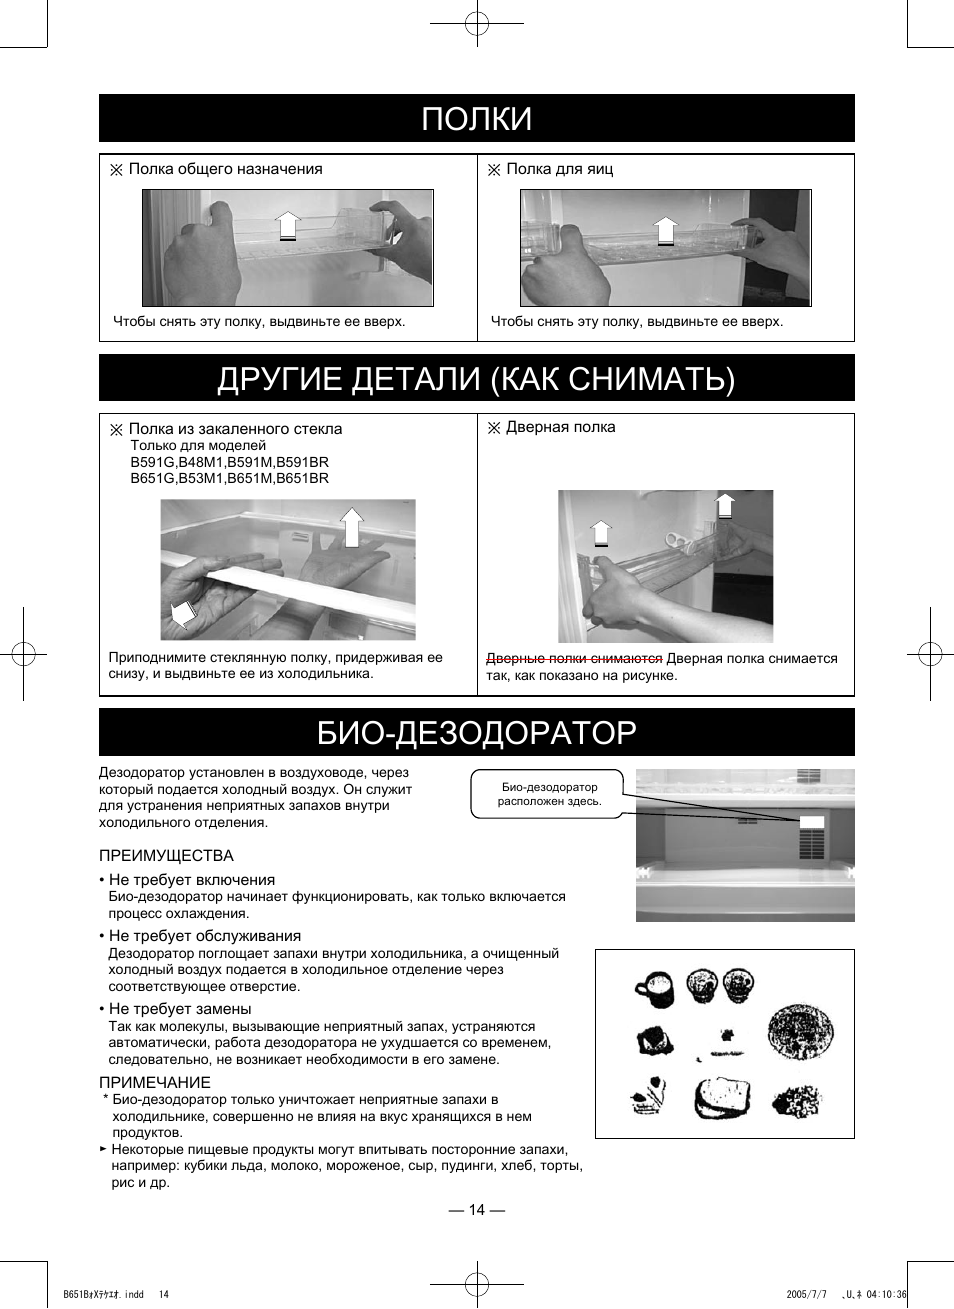 Другие детали (как снимать) био-дезодоратор, Полки | Инструкция по эксплуатации Panasonic NR-B591BR-X4 | Страница 7 / 8